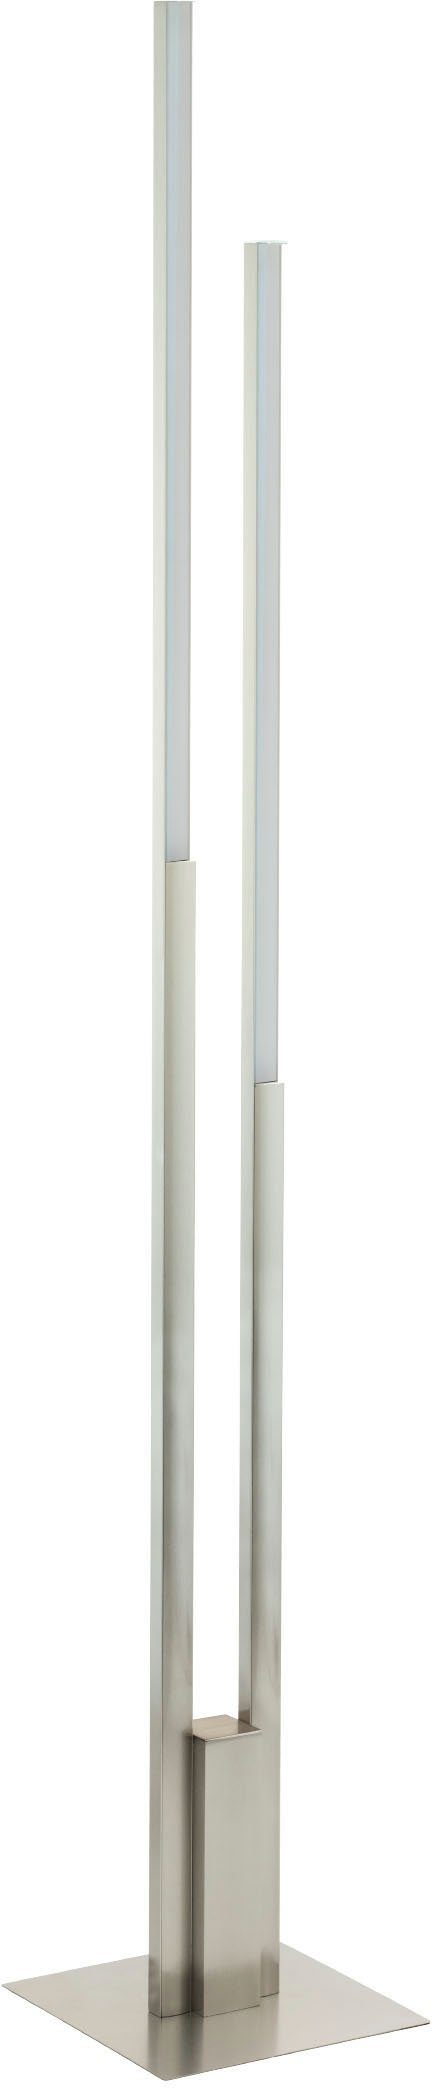 EGLO Stehlampe FRAIOLI-Z, LED kaltweiß - warmweiß 2X17W kaltweiß, Alu - in nickel integriert, warmweiß Stehleuchte aus - - fest